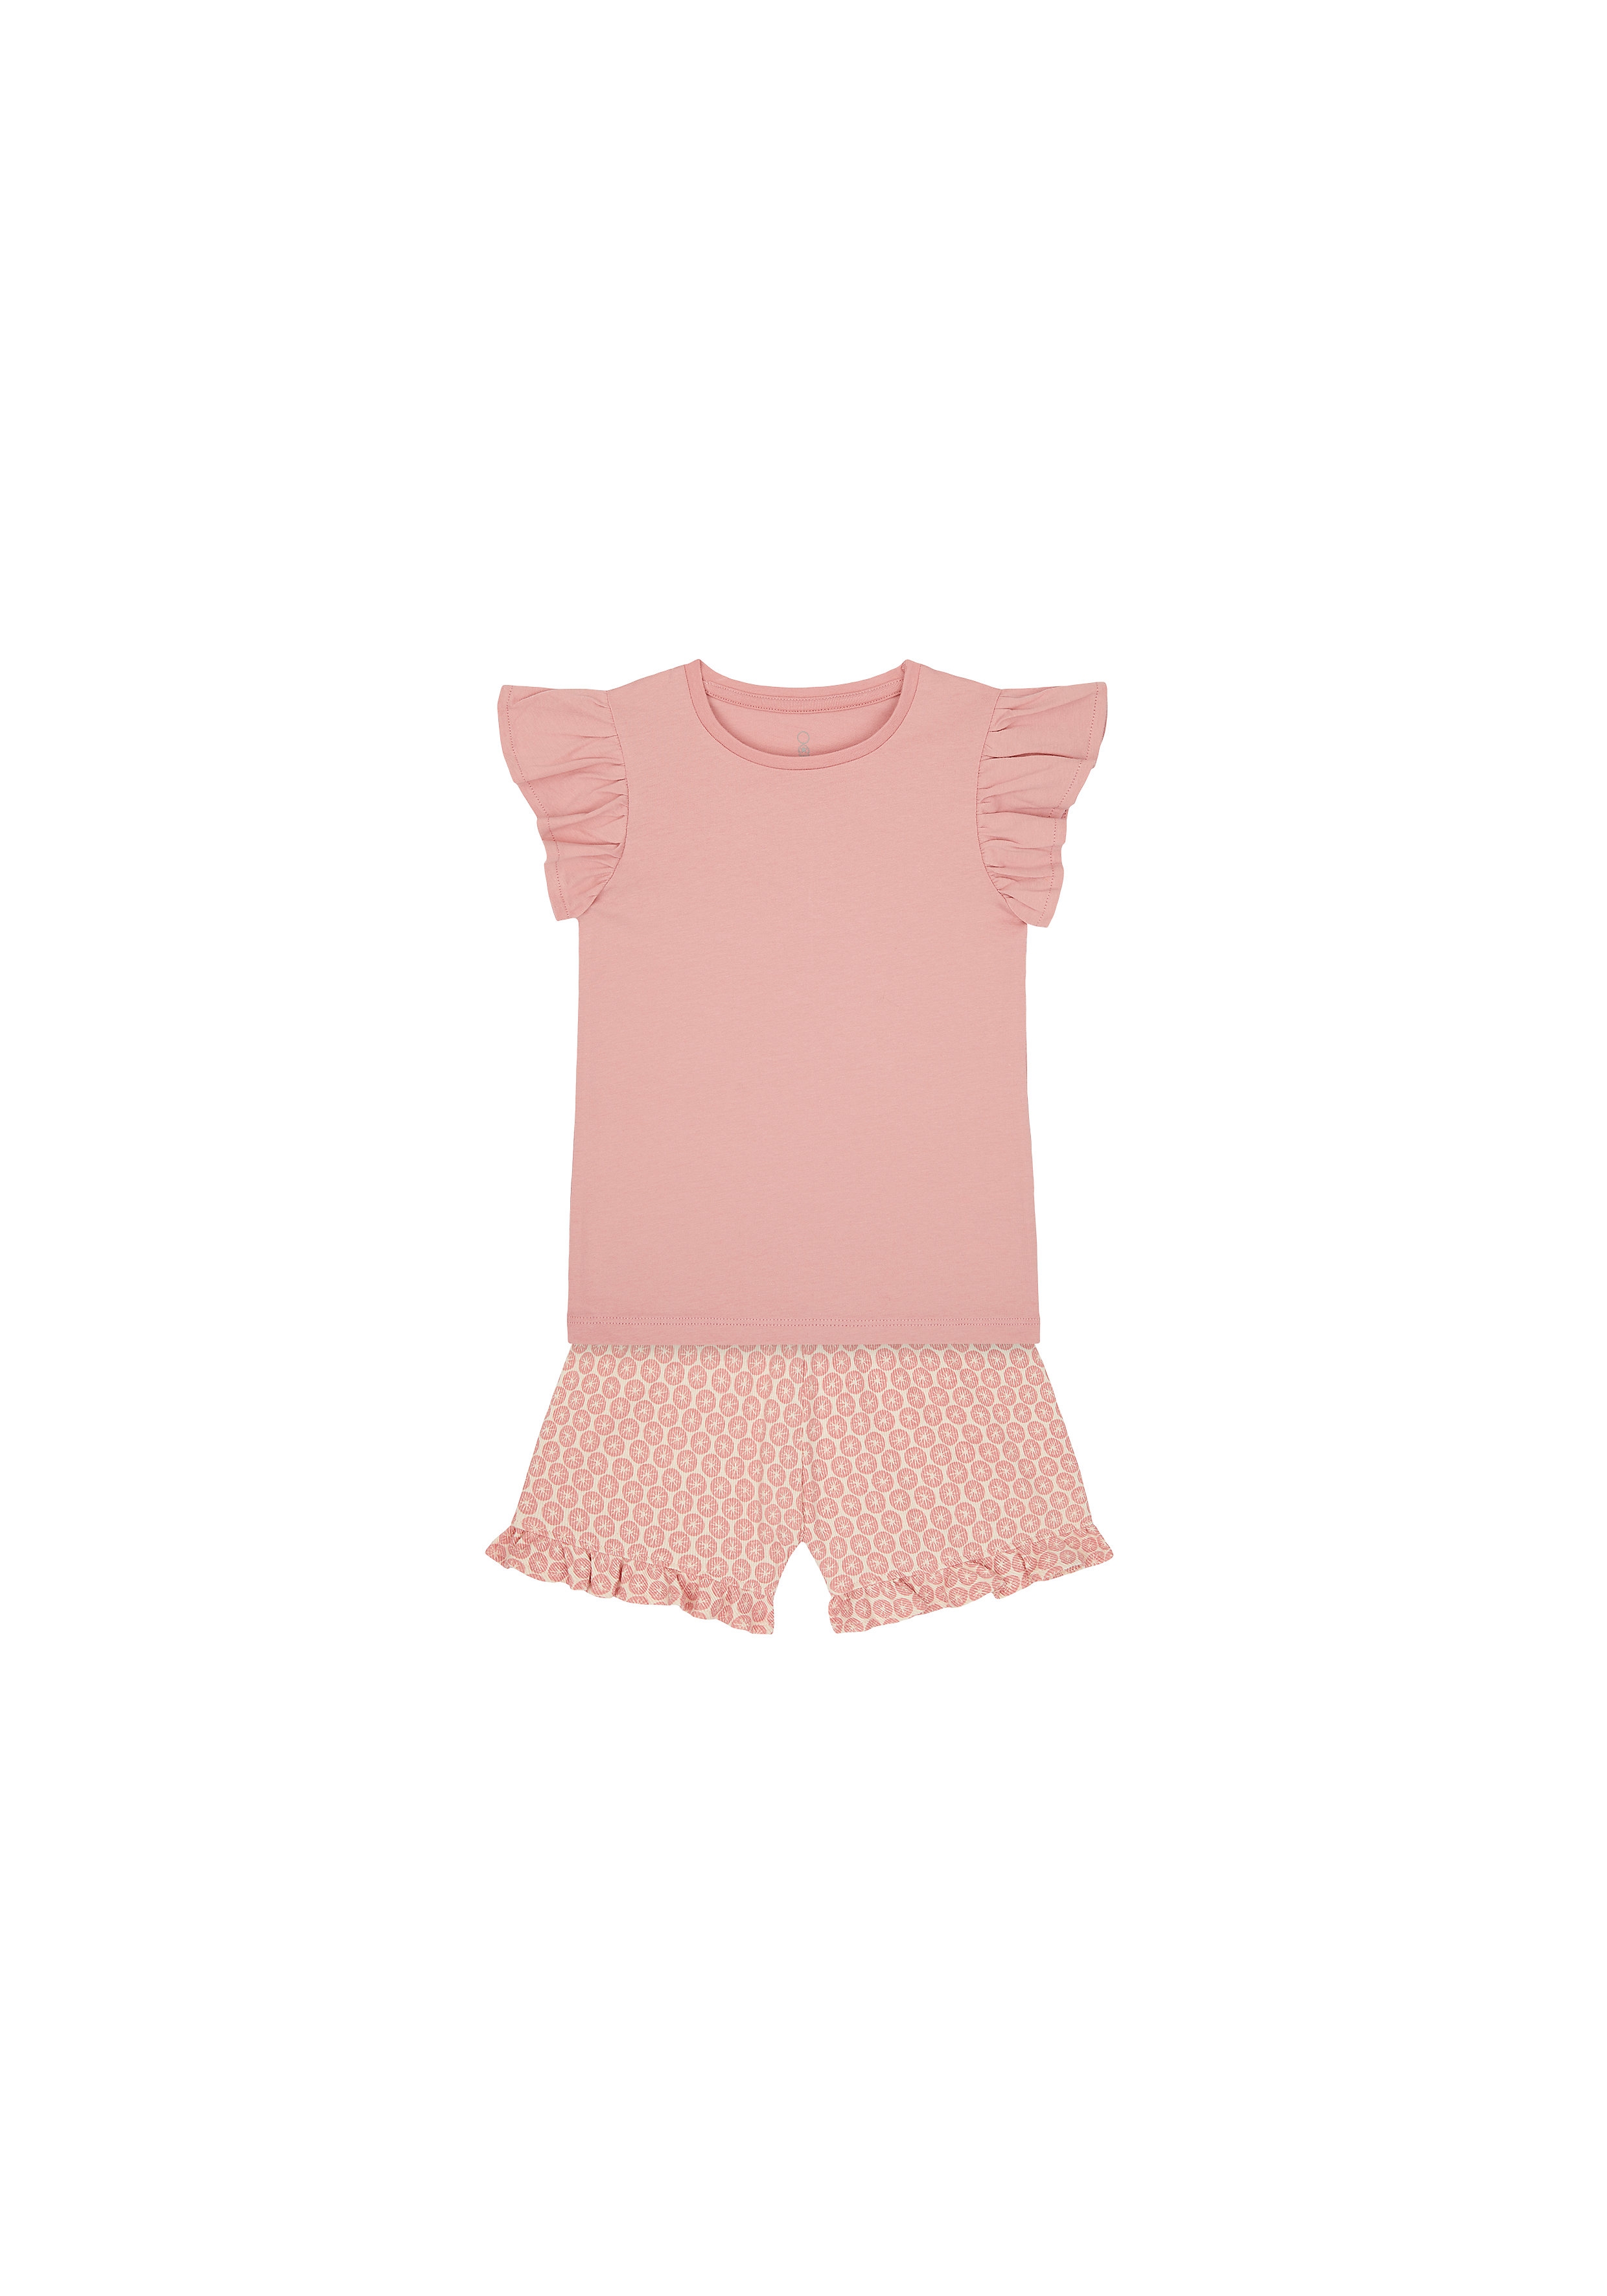 Girls Half Sleeves T-Shirt And Shorts Set Printed - Pink